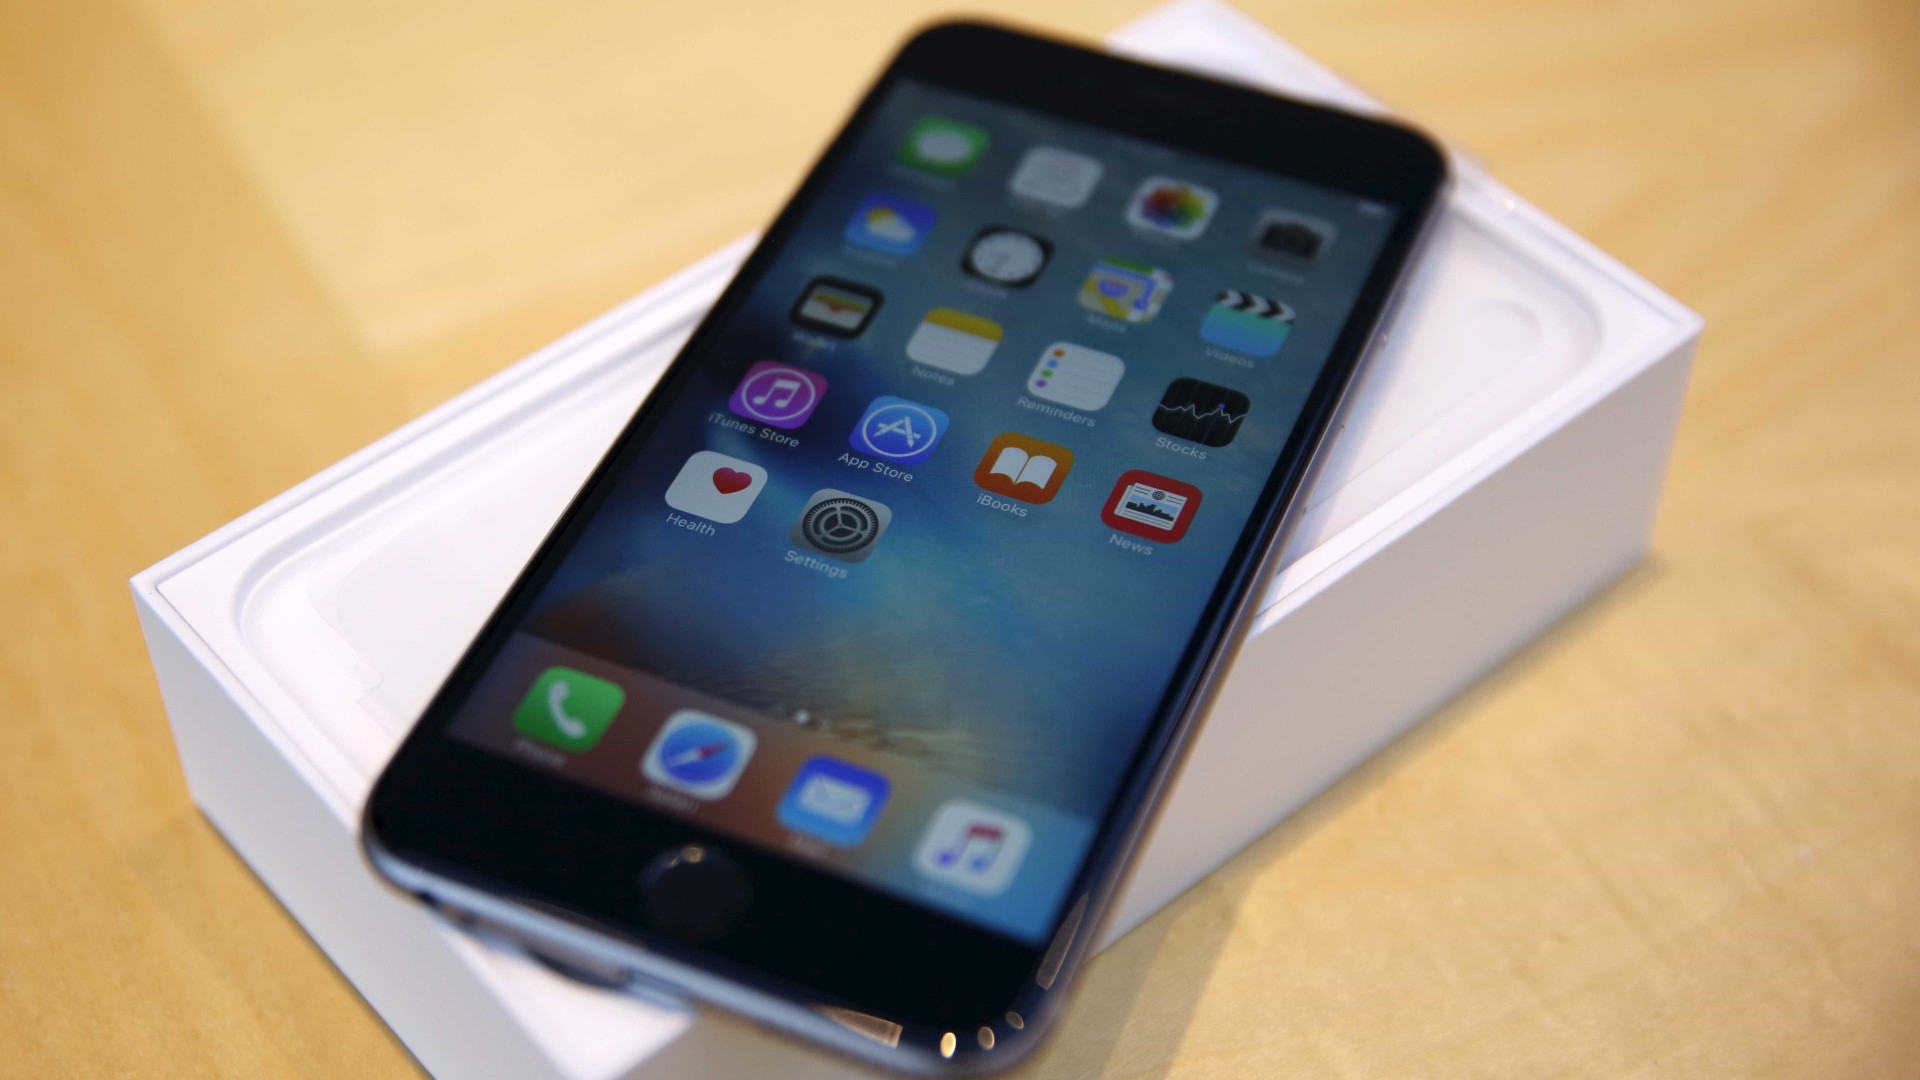 Leilão da Receita Federal tem iPhone 6 e 7 preços baixos